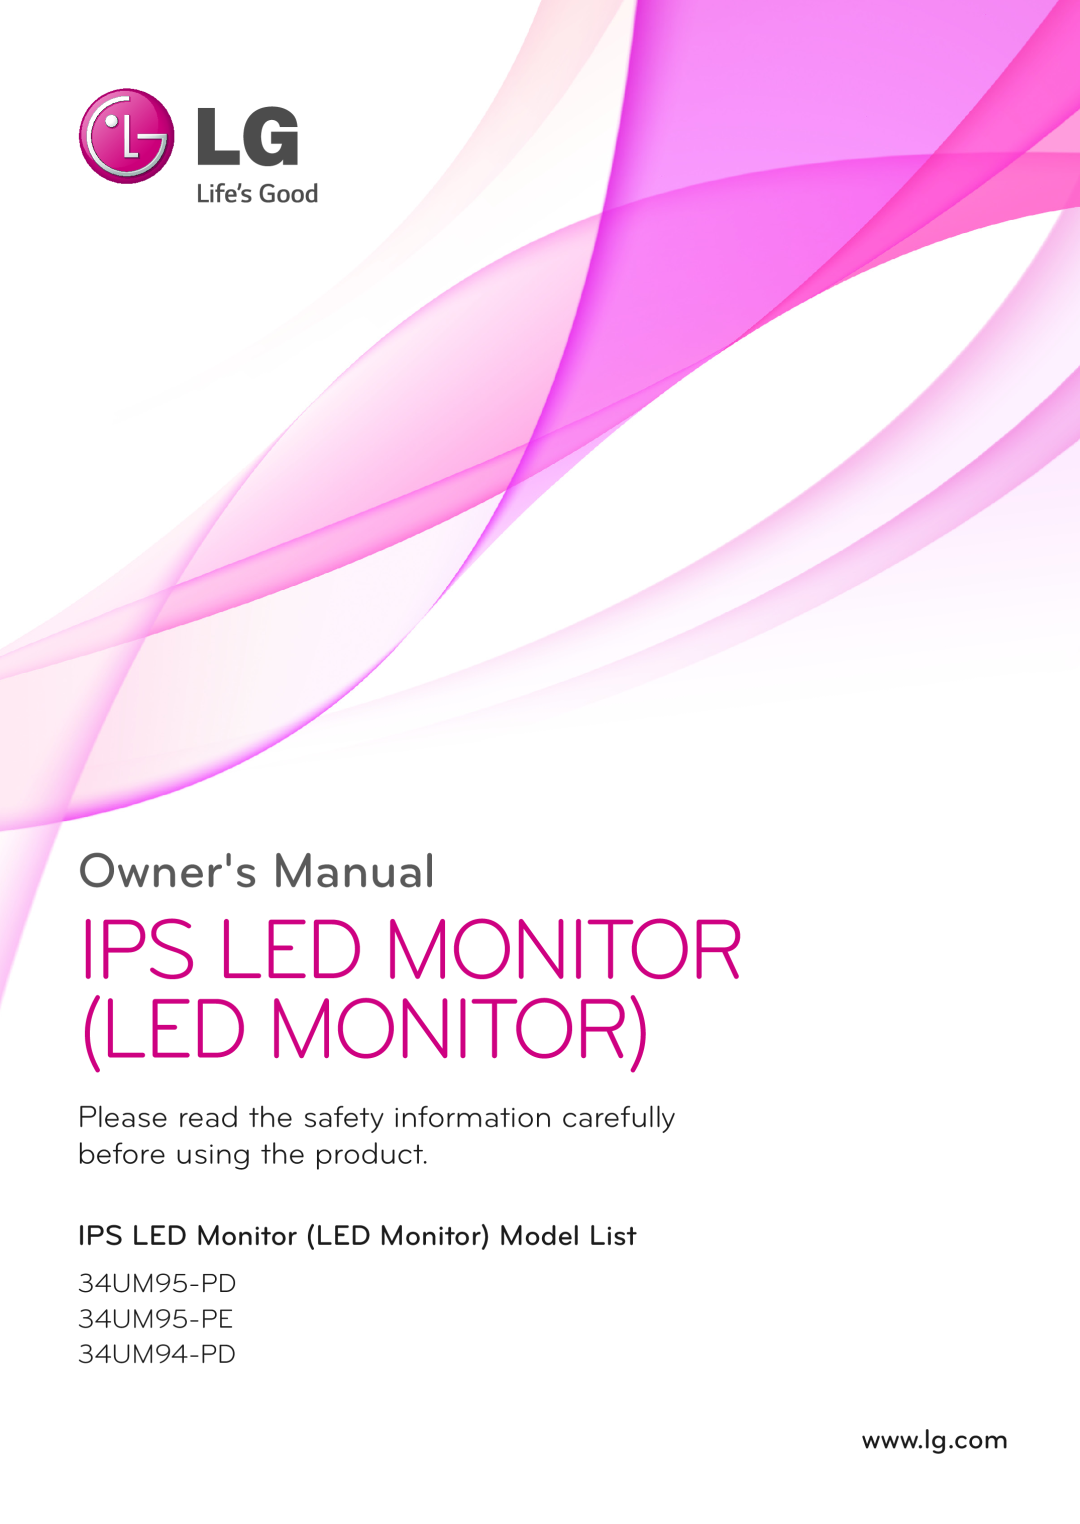 LG Electronics 34UM95-PD/ 34UM95-PE / 34UM94-PD owner manual Ips Led Monitor Led Monitor, Owners Manual 